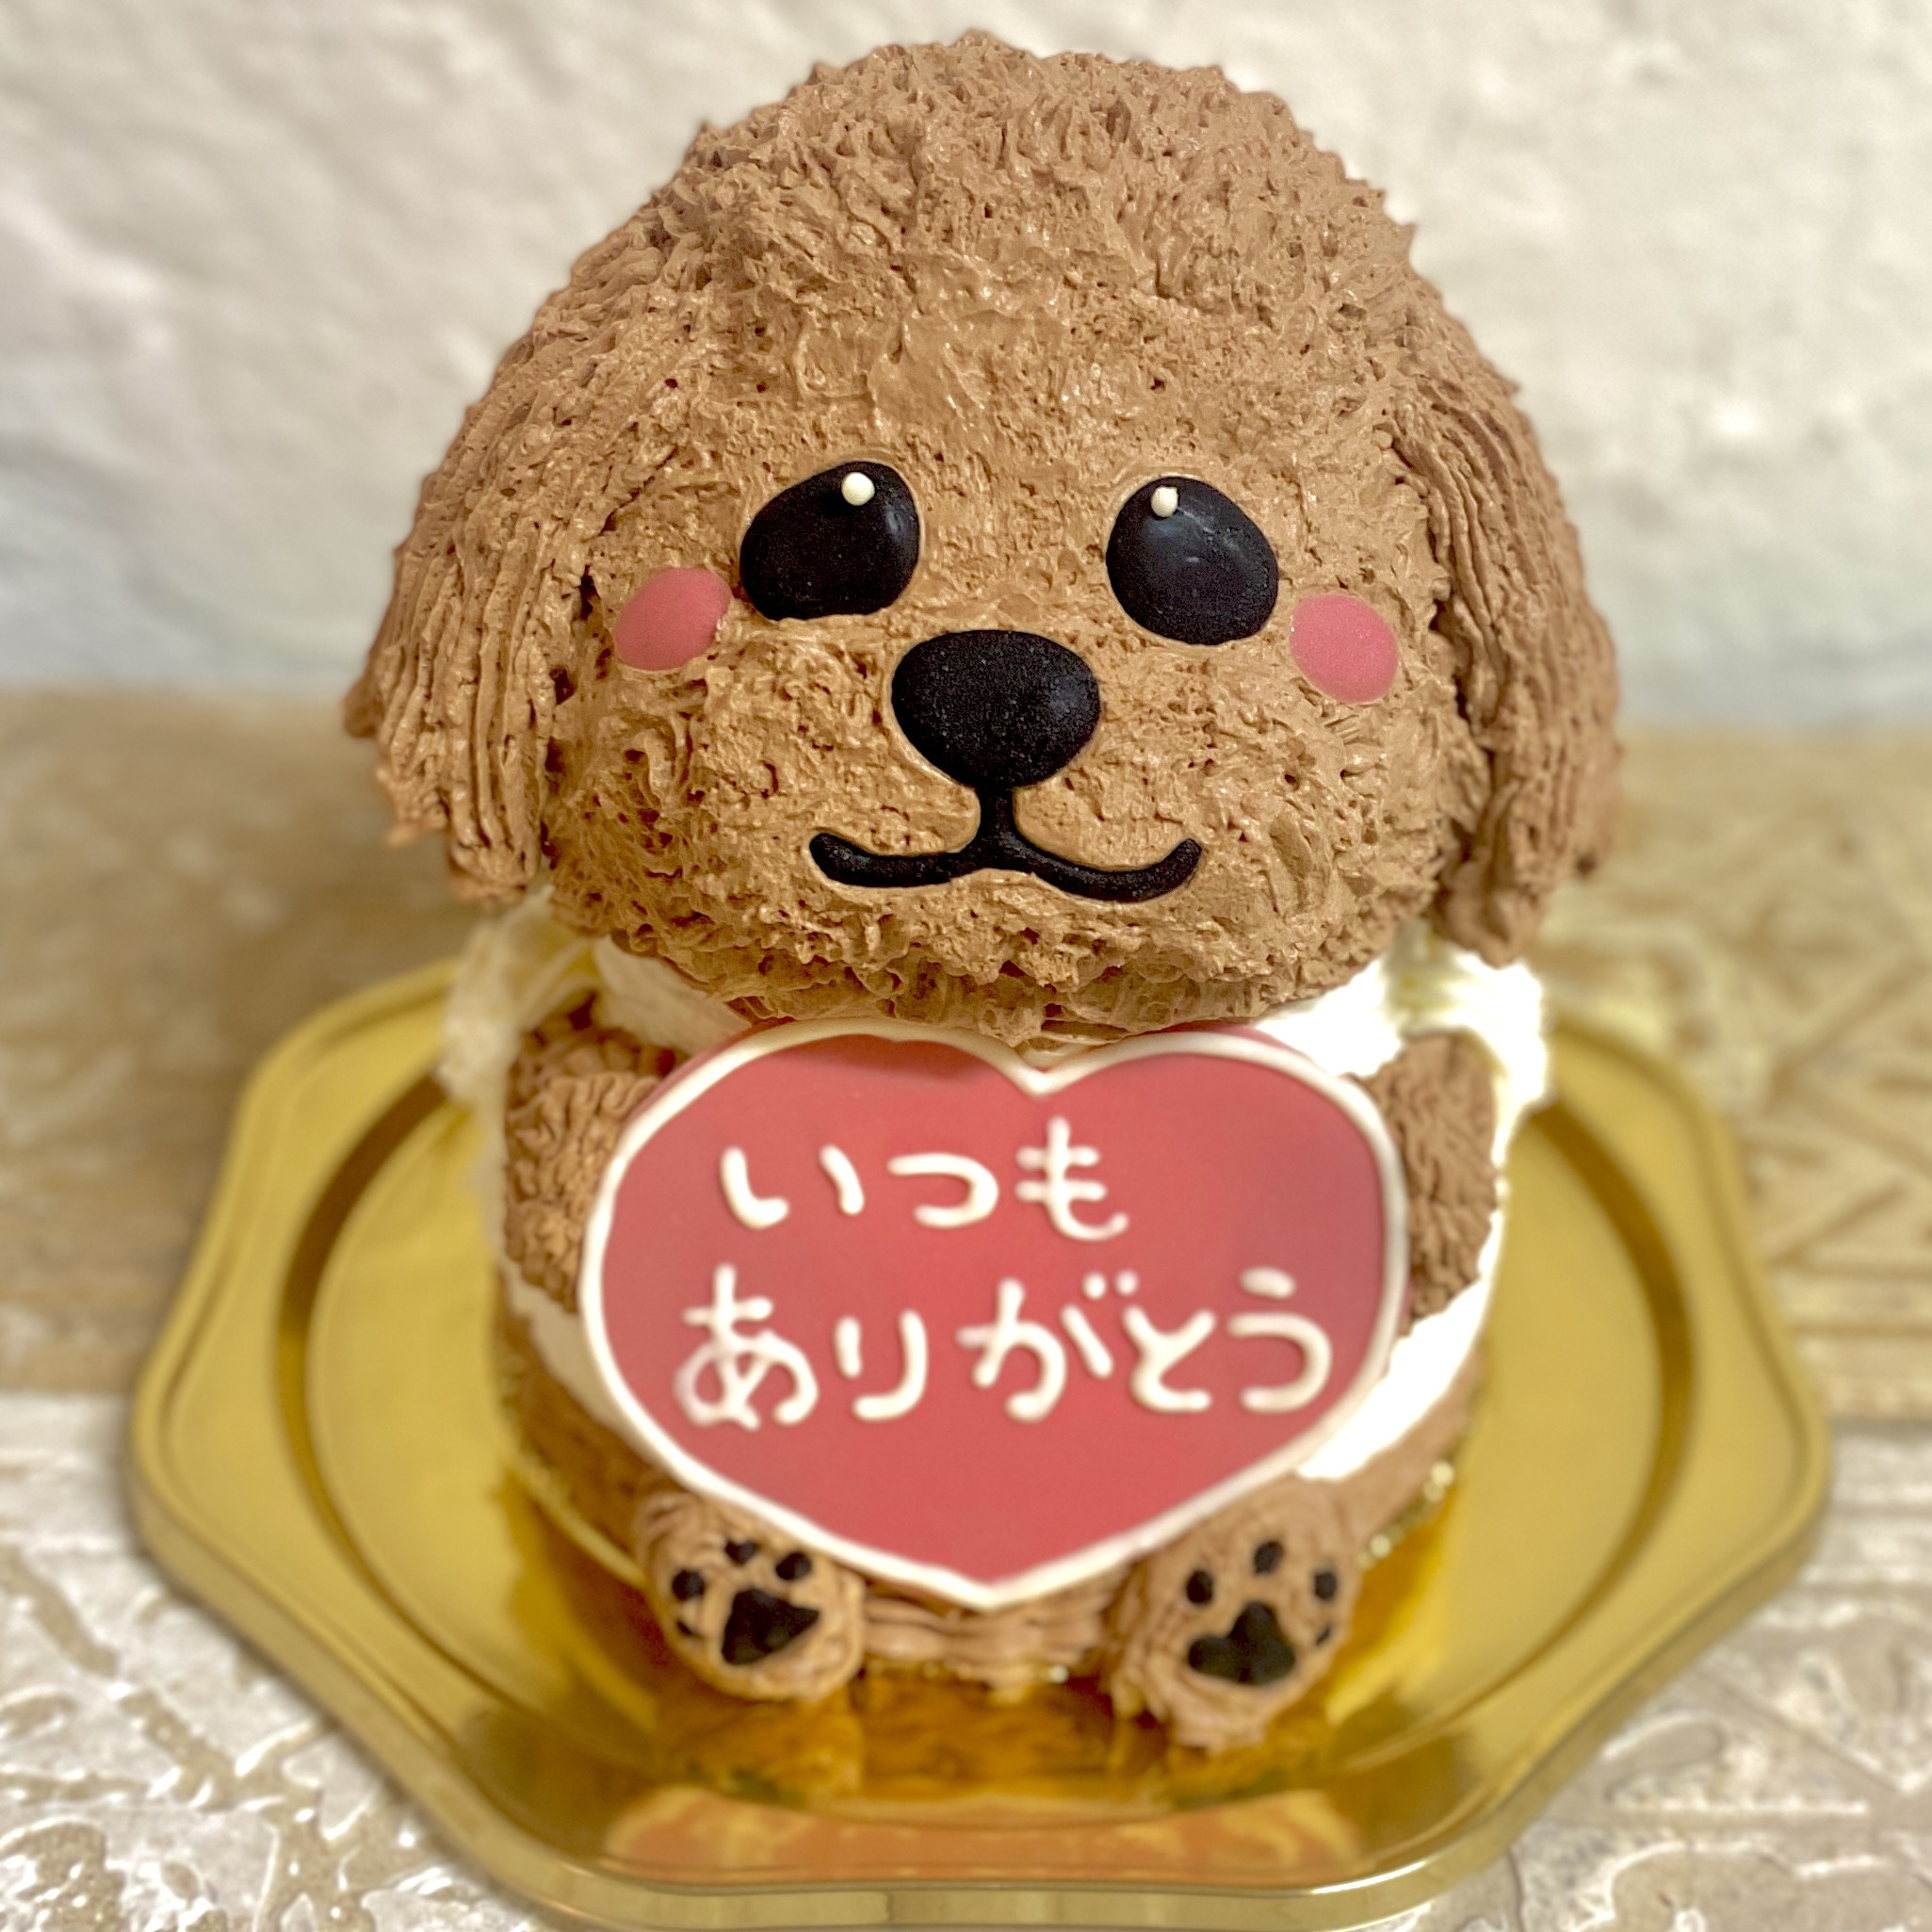 トイプードルの立体ケーキ 犬 ガナッシュクリーム 誕生日 センイルケーキ 動物ケーキ ドンムルケーキ  1